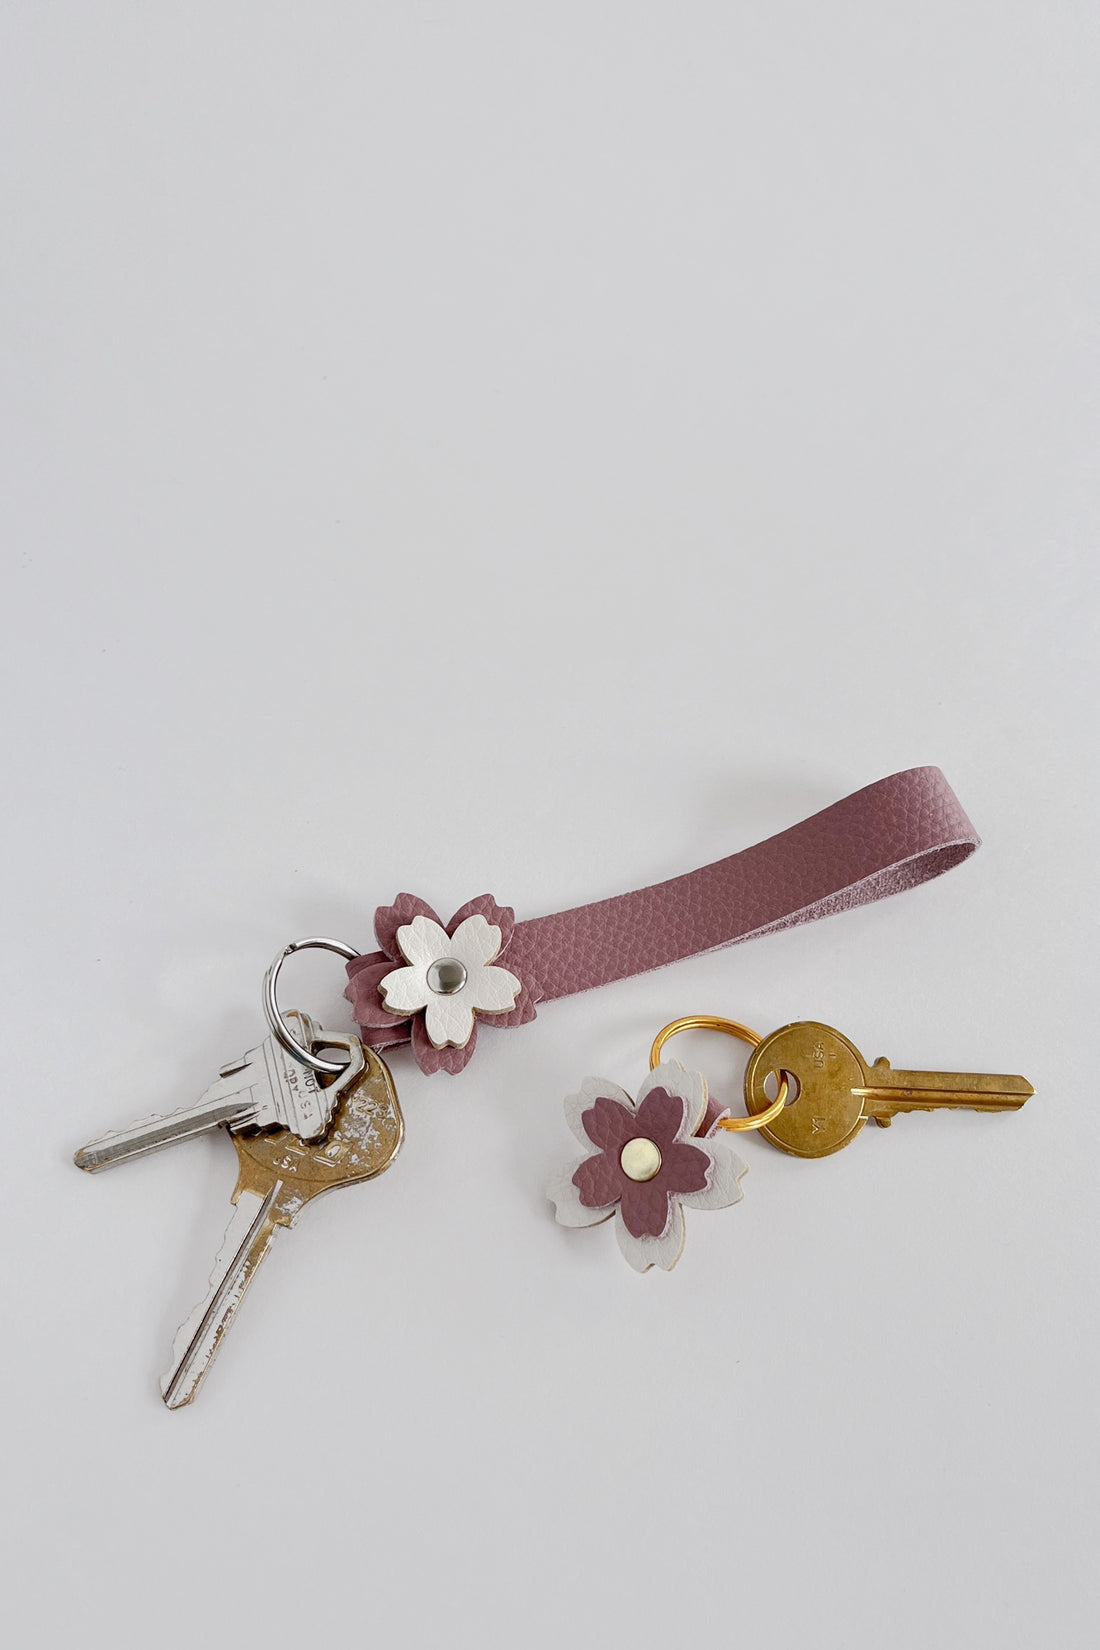 Cherry Blossom Strap Keychain